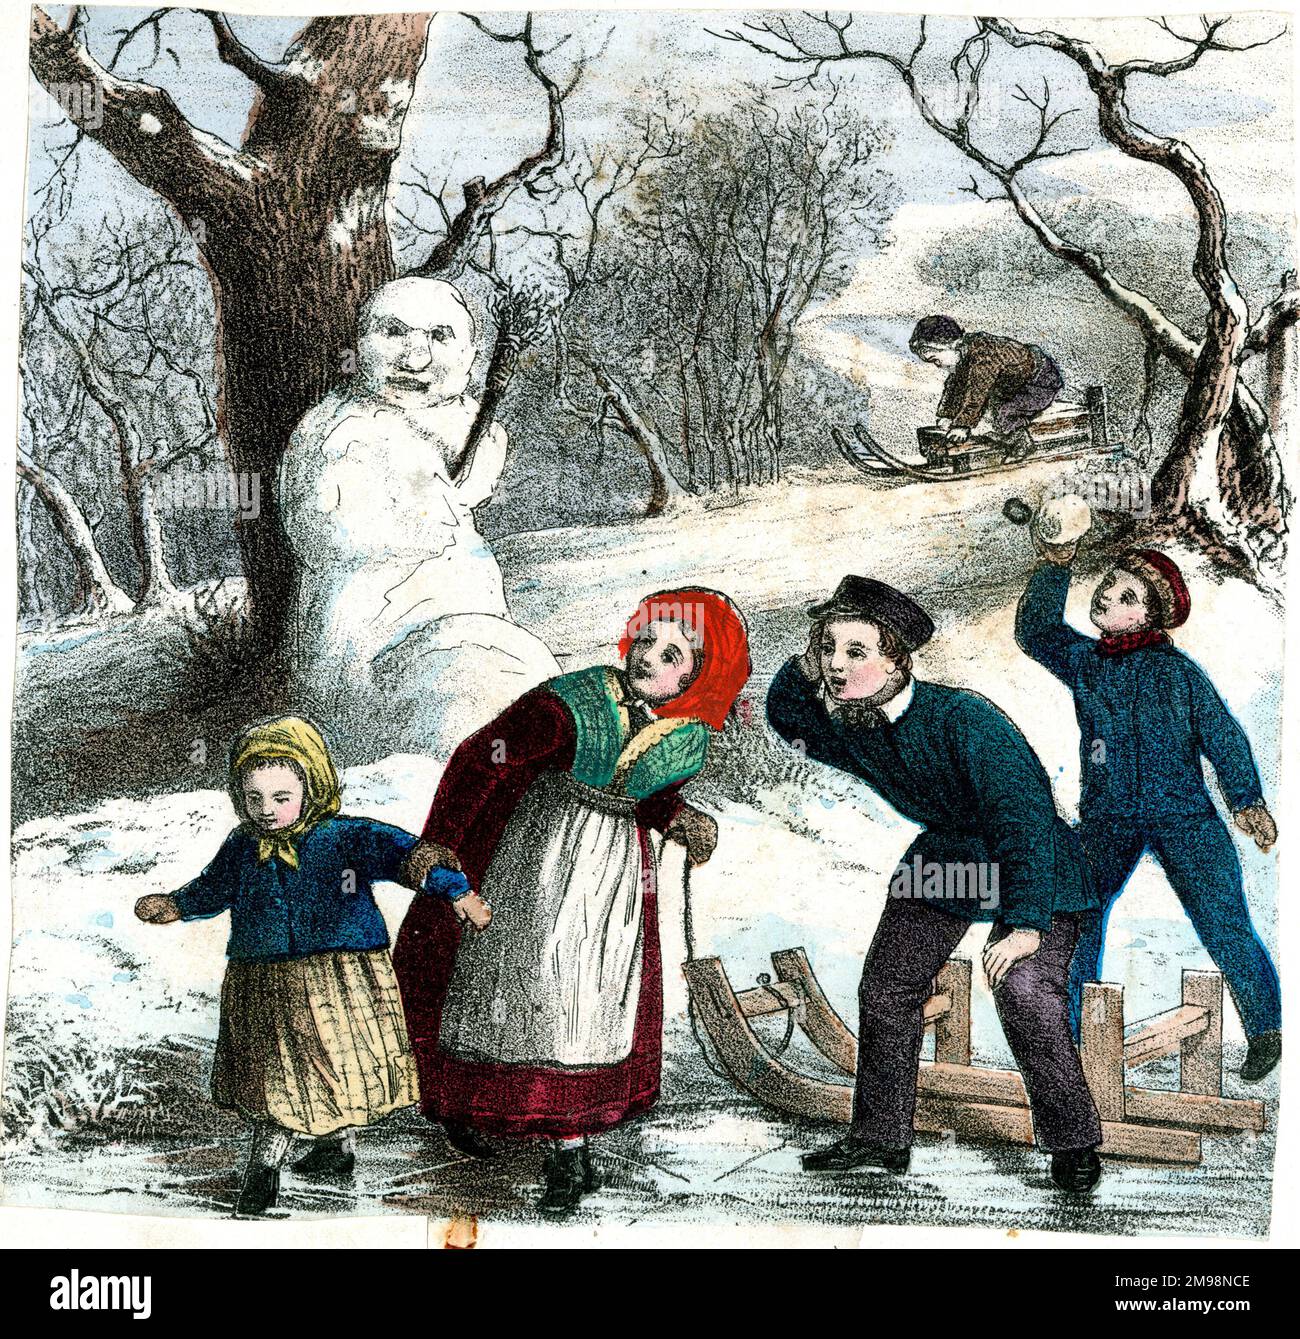 Imprimé allemand - four Seasons, enfants dans une scène d'hiver, avec un bonhomme de neige et des luges. Banque D'Images